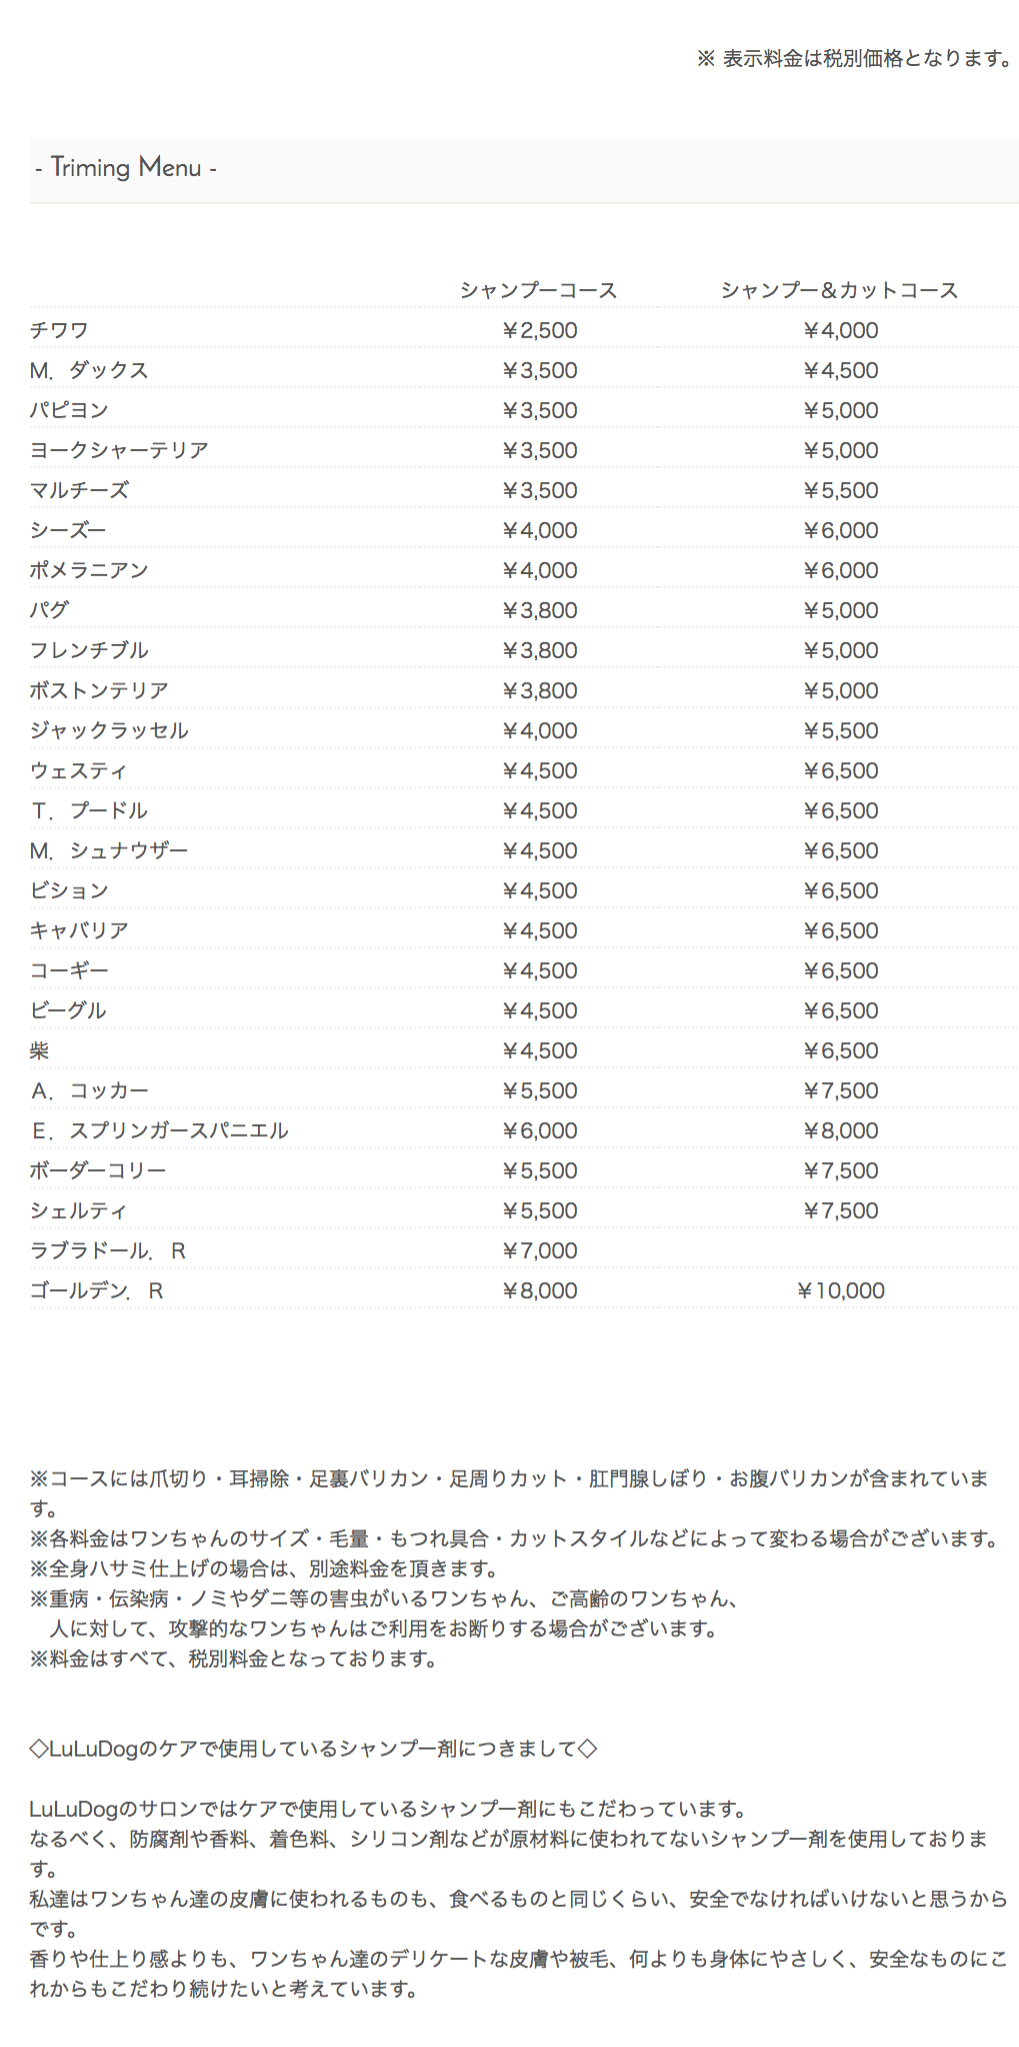 トイプードルのカットコースは6500円から